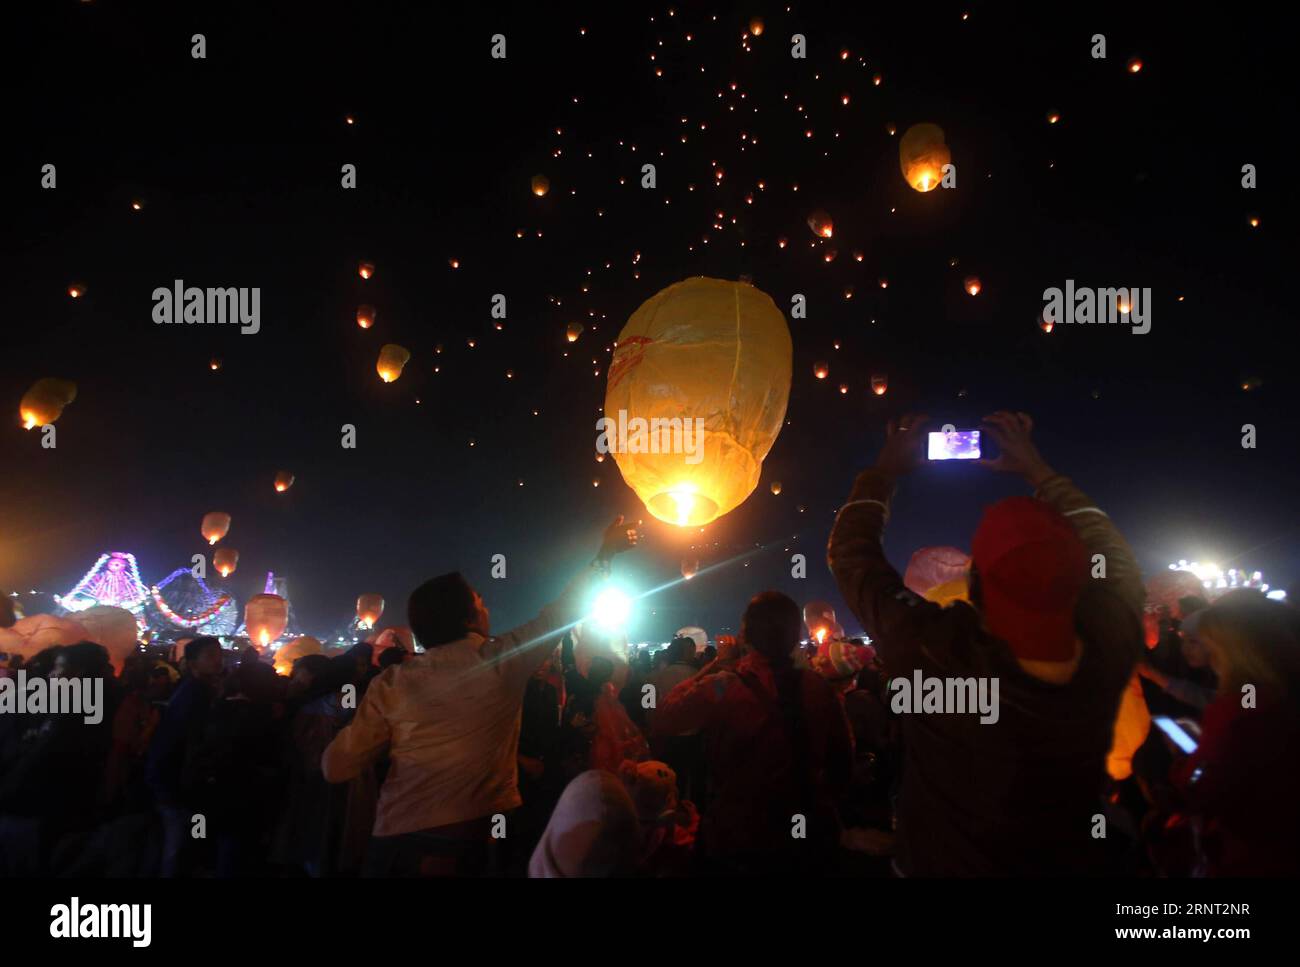 (171027) -- TAUNGGYI (MYANMAR), 27. Oktober 2017 -- die Menschen lassen Himmelslaternen während des Tazaungdaing-Festivals in Taunggyi, Myanmar, am 26. Oktober 2017 frei. Das Tazaungdaing Festival, auch bekannt als das Festival der Lichter, das im achten Monat des traditionellen myanmarischen Kalenders auf den Vollmondtag fällt, wird als Nationalfeiertag in Myanmar gefeiert und markiert das Ende der Regenzeit. ) (whw) MYANMAR-TAUNGGYI-TAZAUNGDAING FESTIVAL UxAung PUBLICATIONxNOTxINxCHN Stockfoto